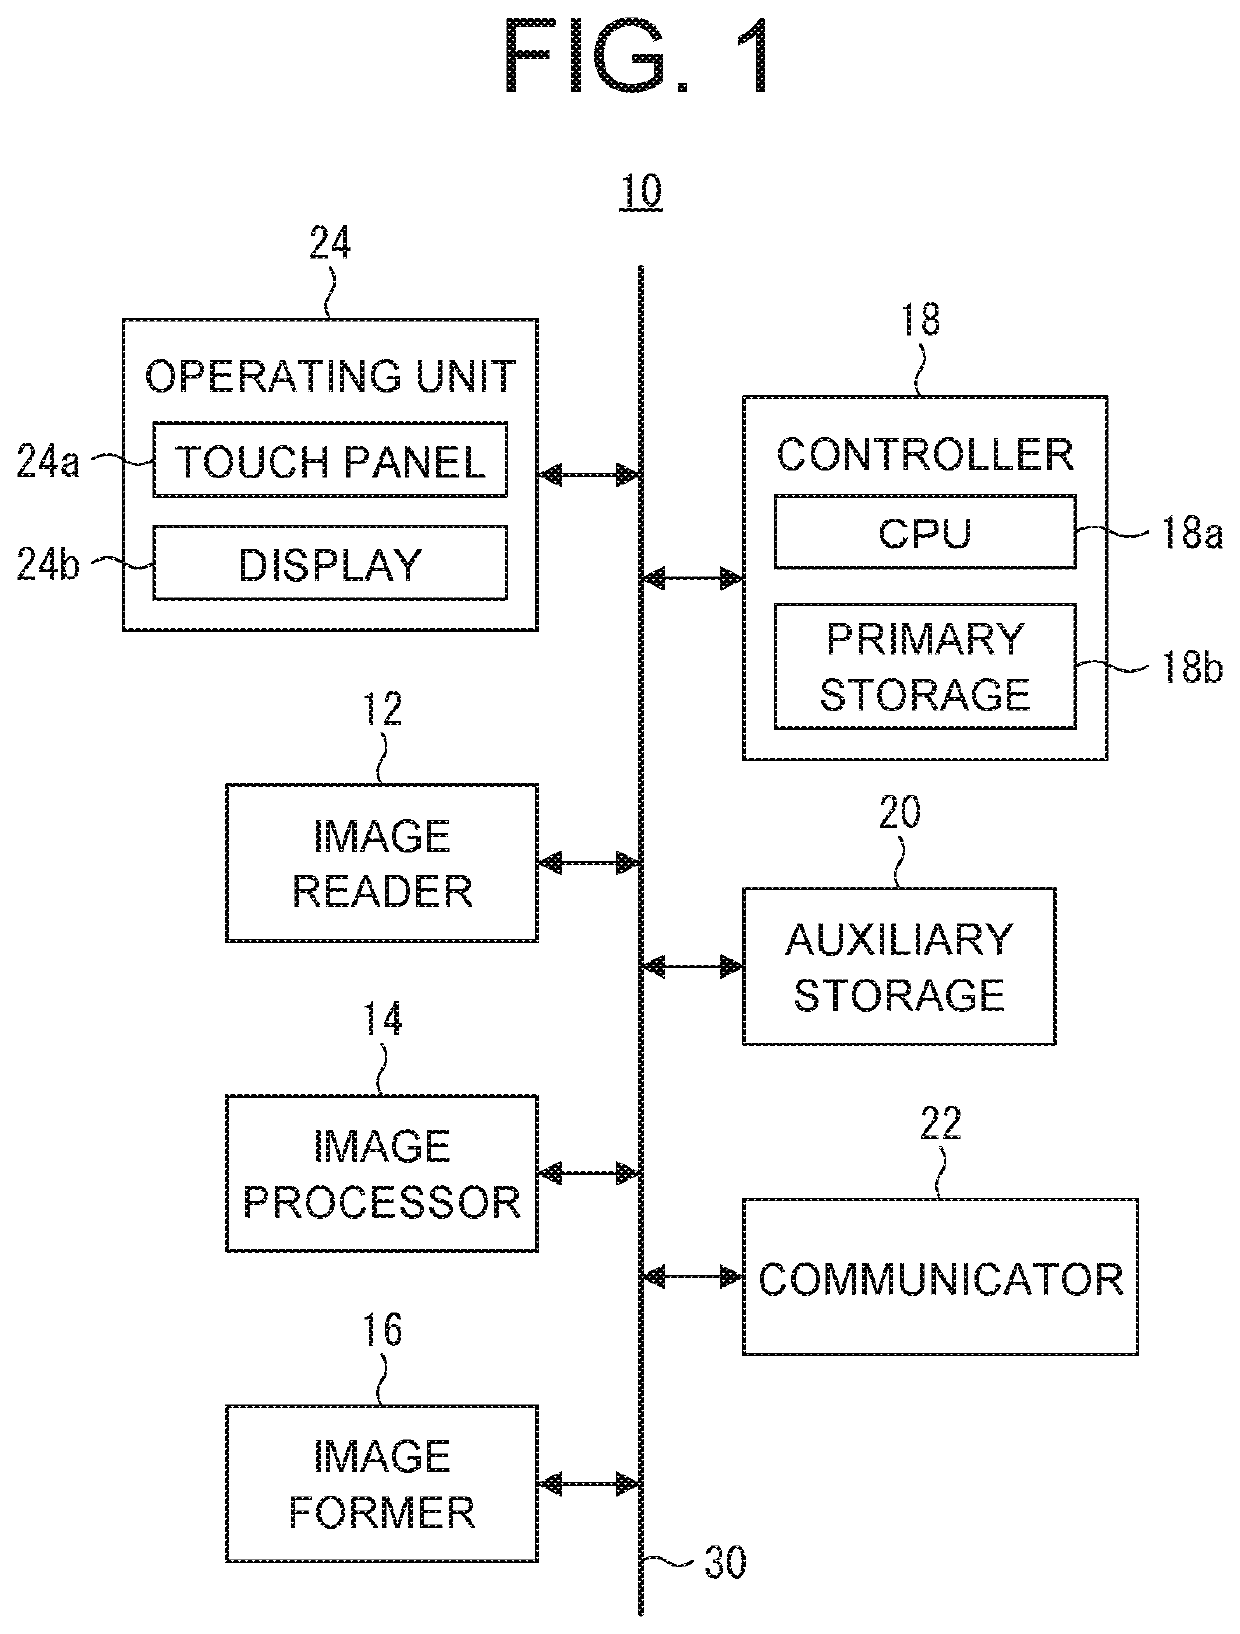 Image processing apparatus, recording medium having image processing program recorded thereon, and image processing method